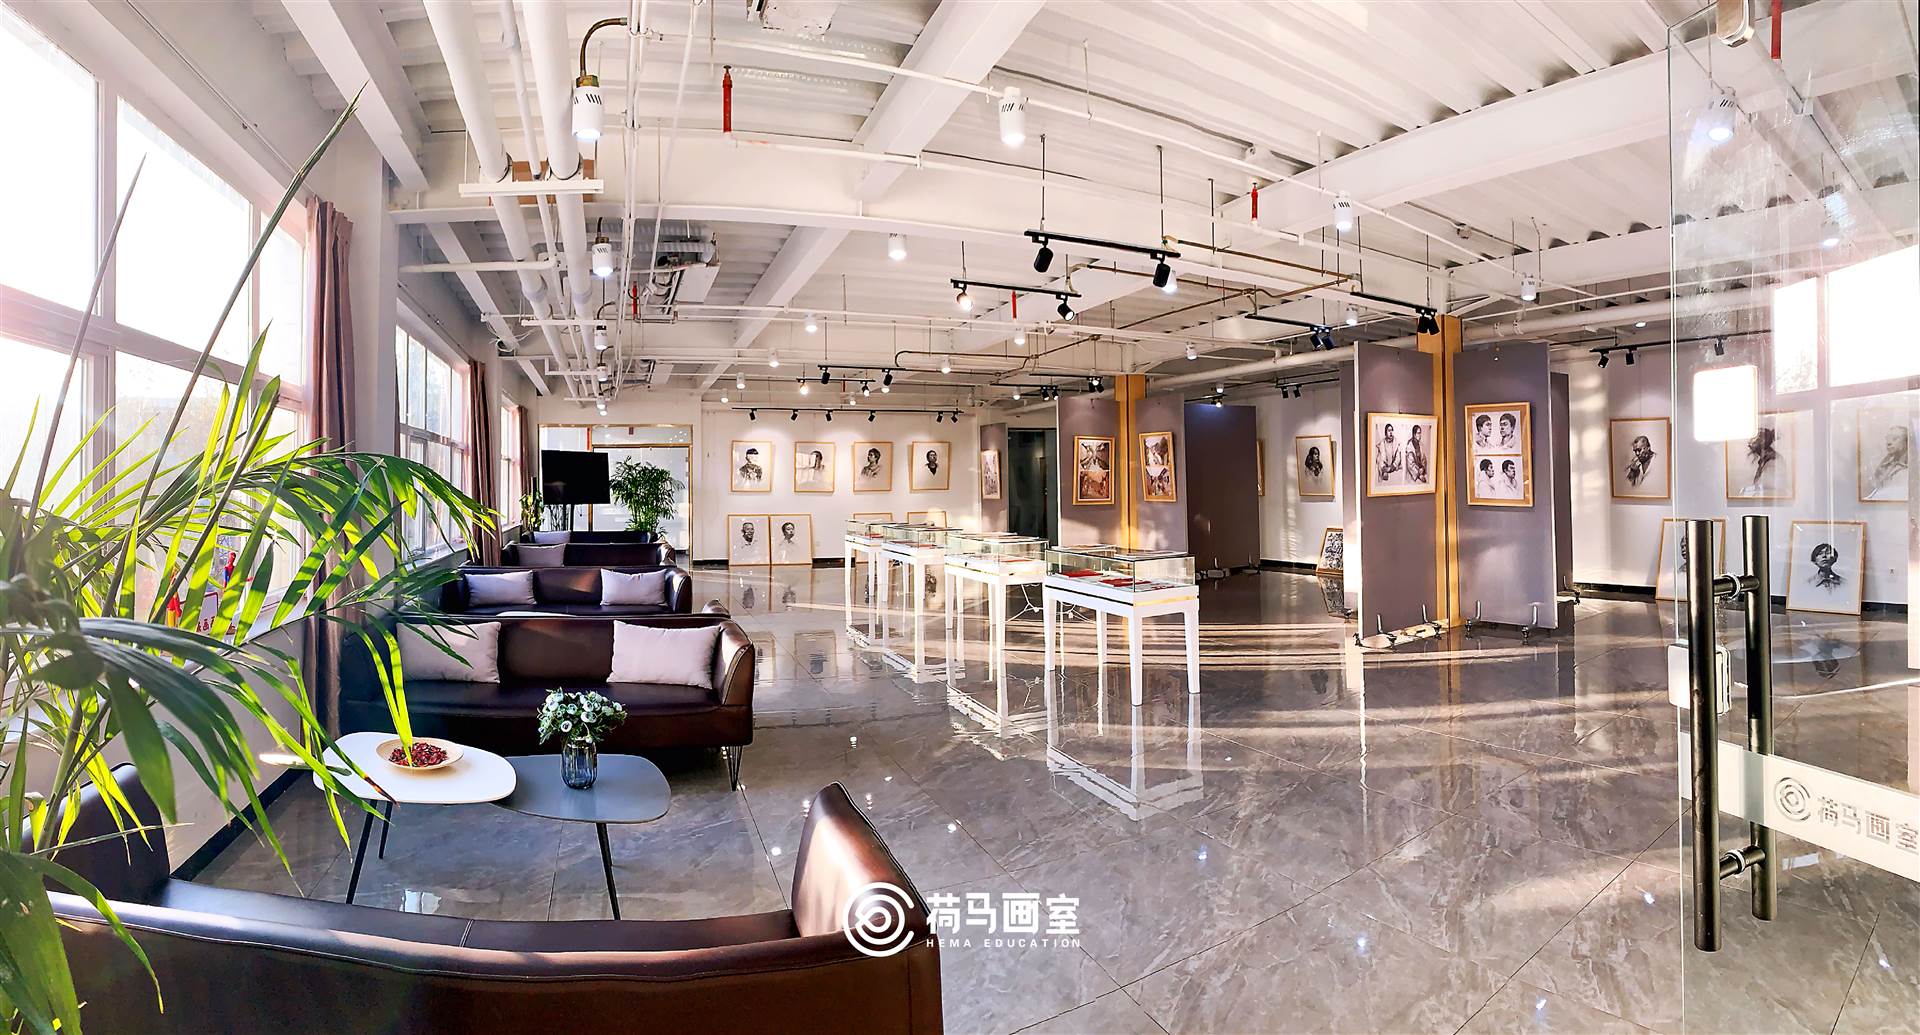 艺考美术培训班寒假美术集训班选择北京荷马画室